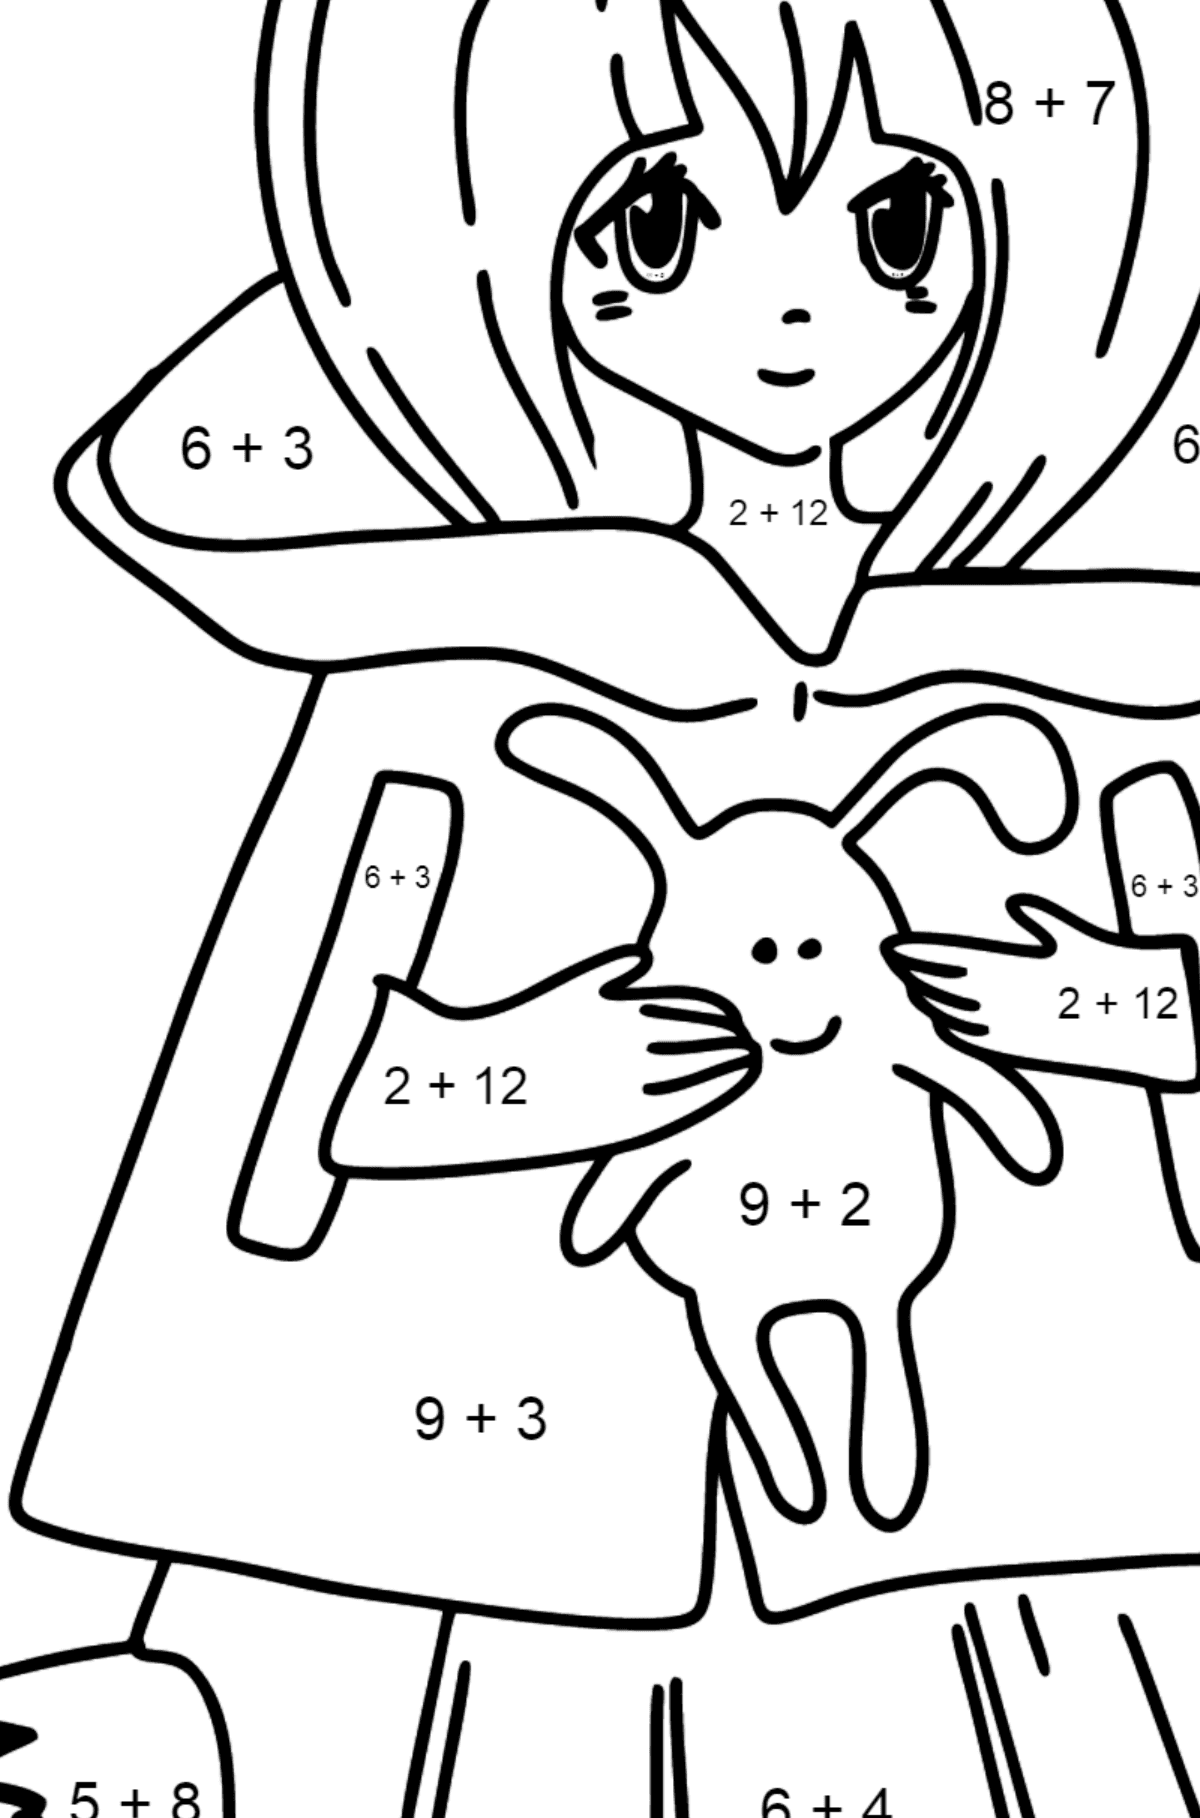 Anime meisje met staart kleurplaat - Wiskunde kleurplaten - optellen voor kinderen